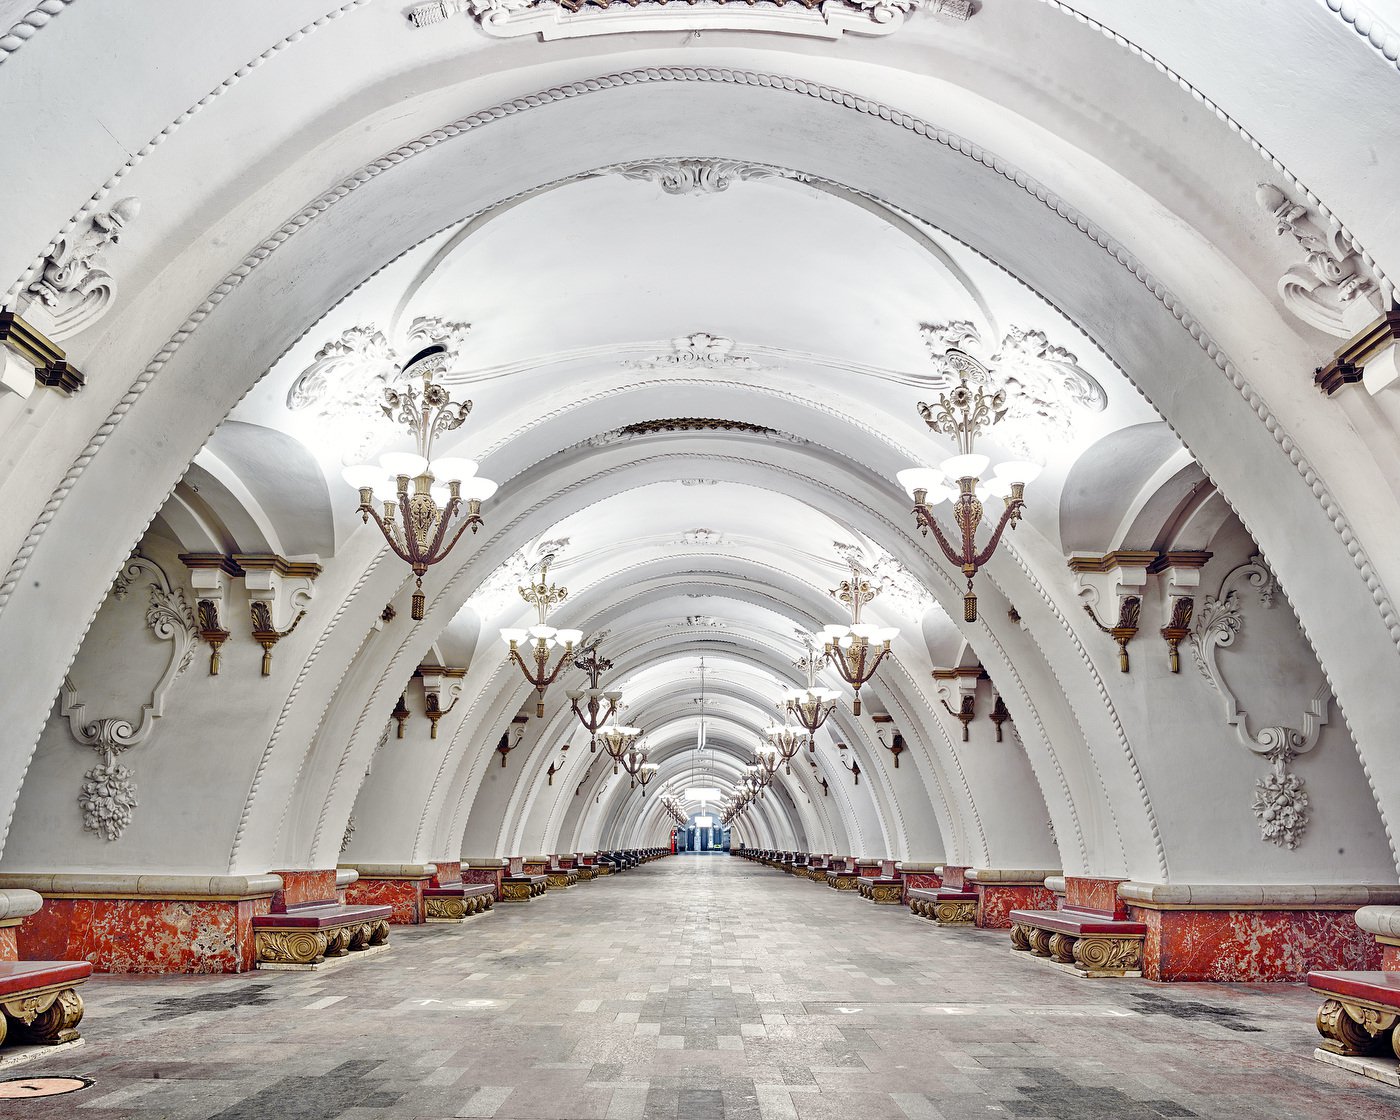 новые красивые станции метро в москве